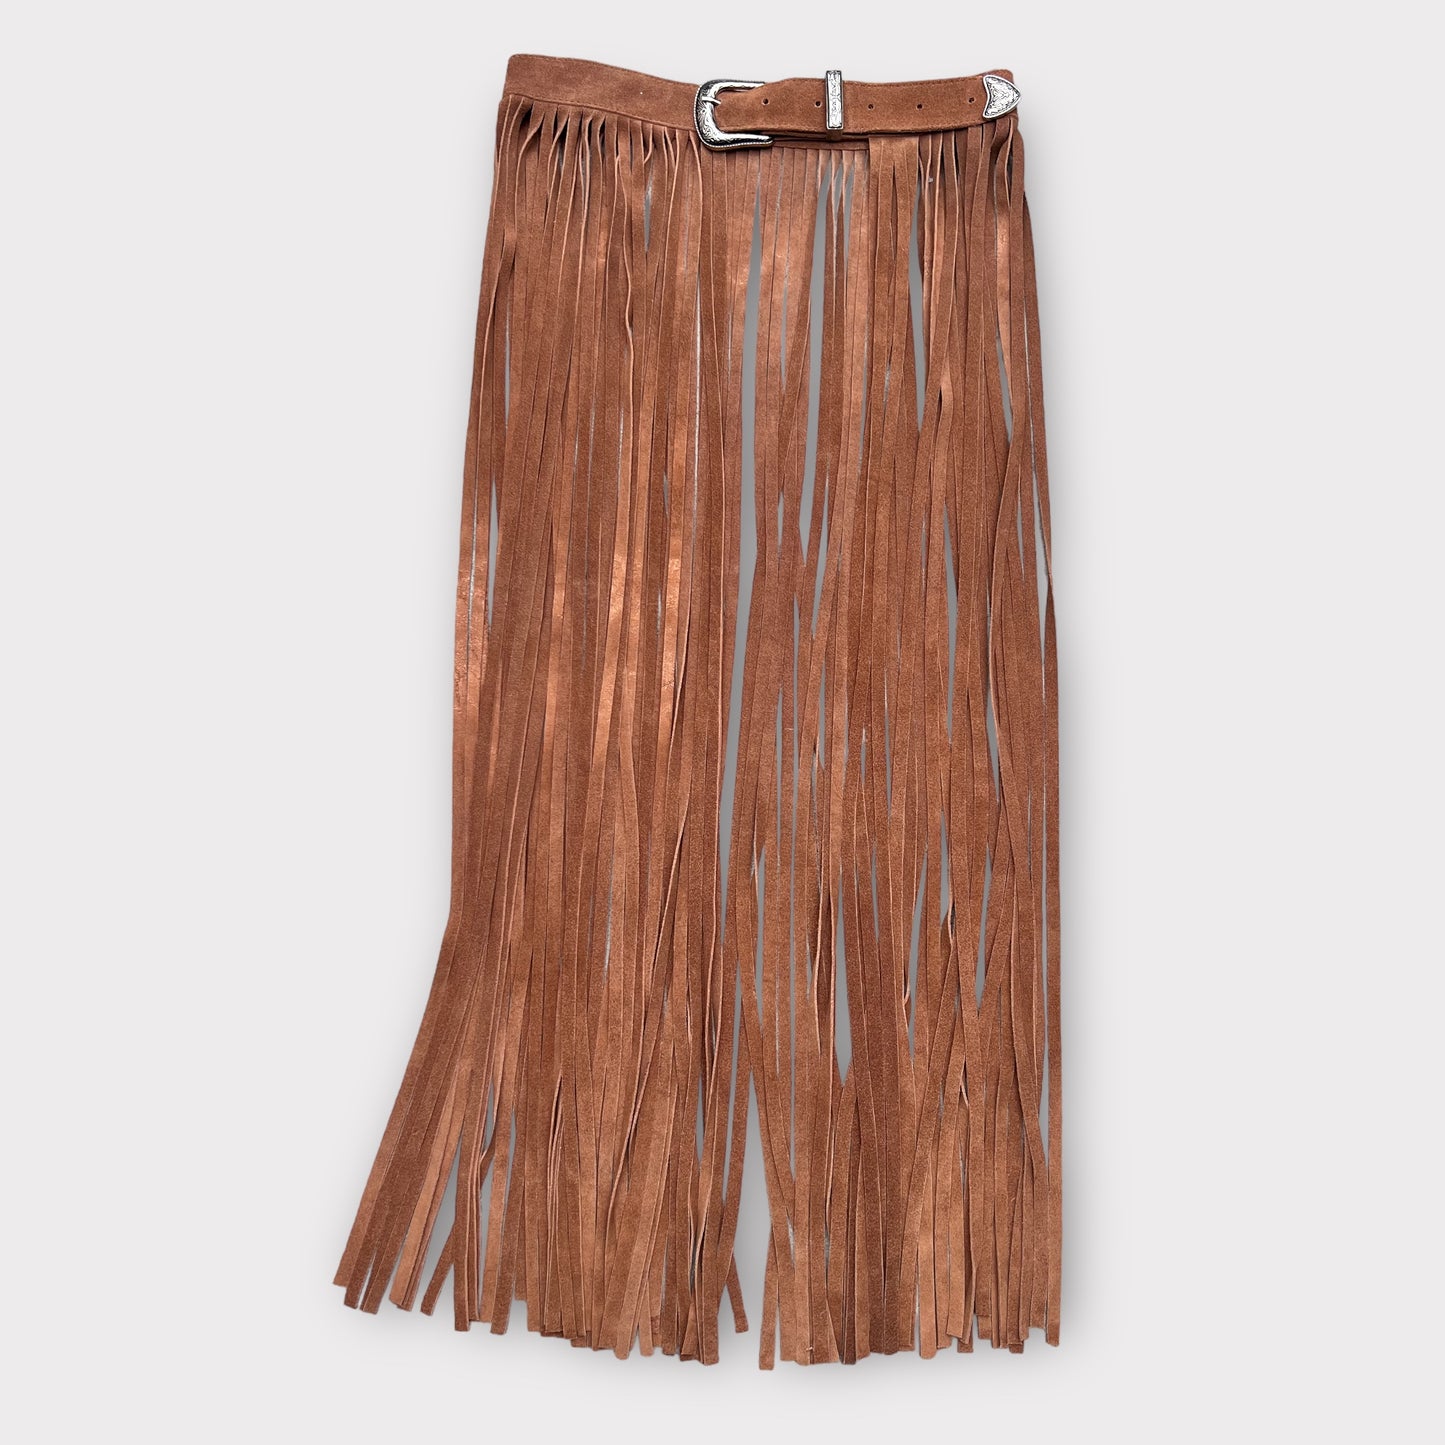 MELISSA long skirt